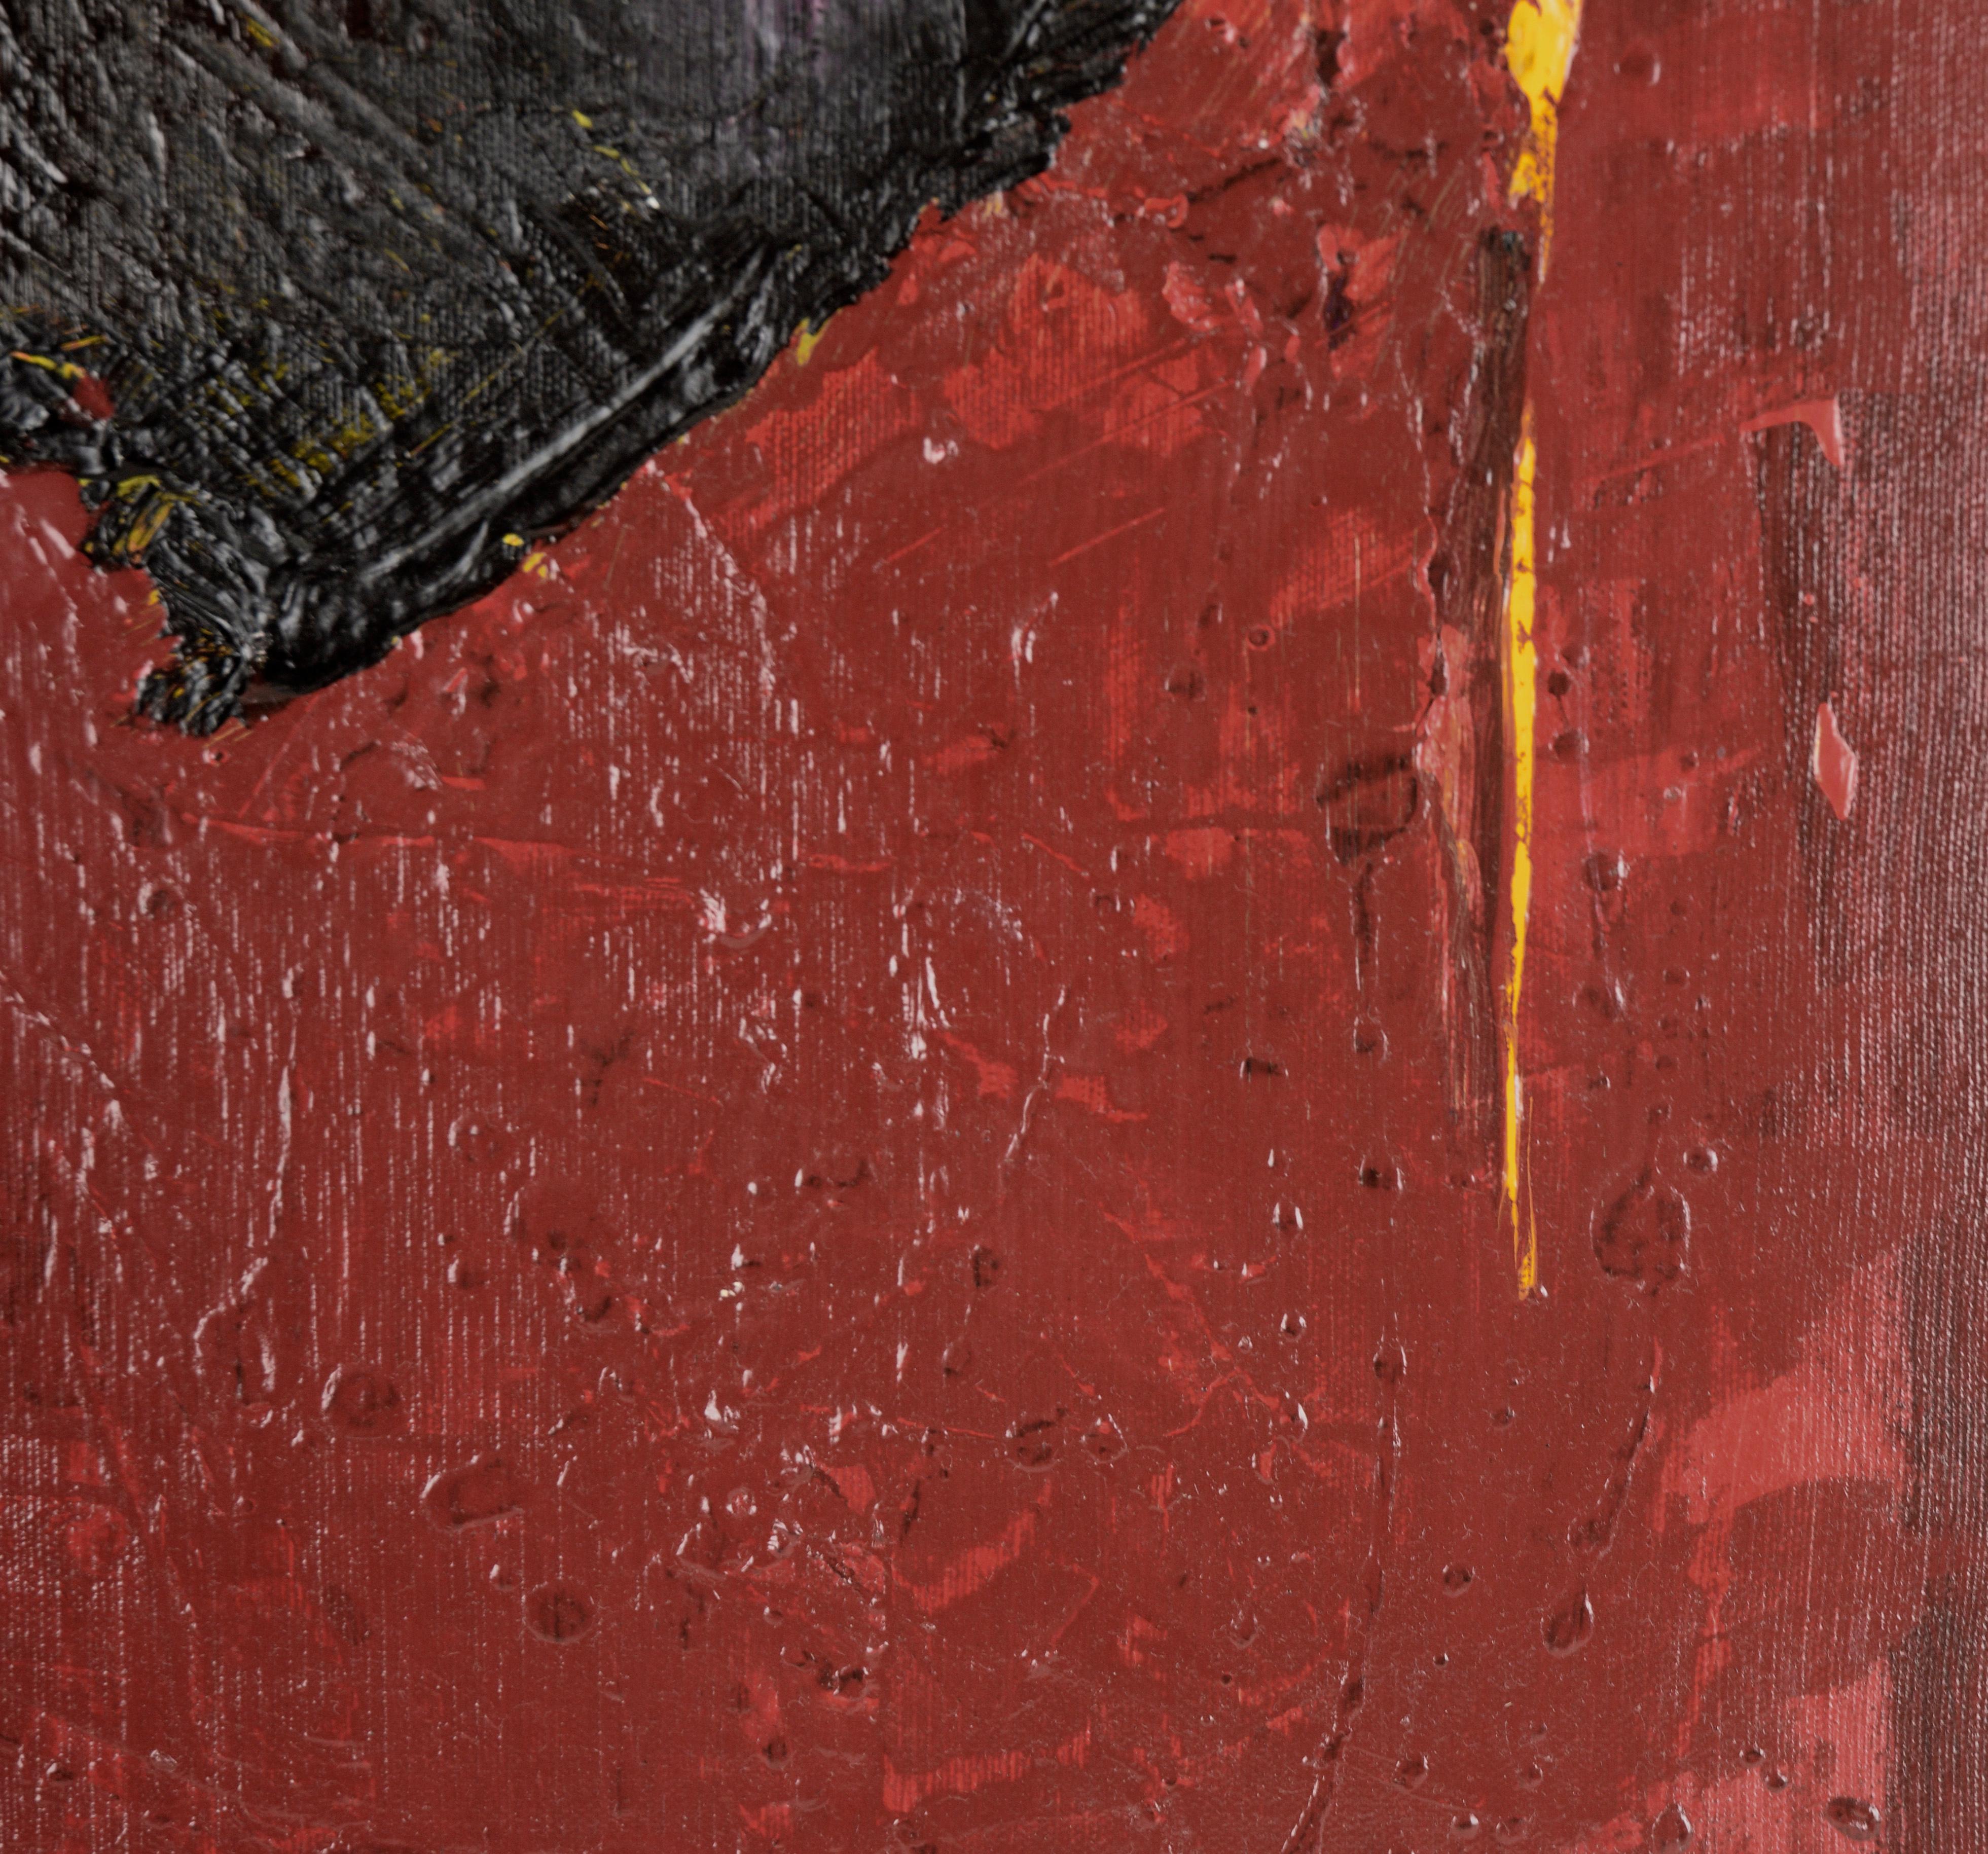 Roter und schwarzer abstrakter Expressionist – Hommage an Jose Guerrero in Acryl

Reich strukturierte abstrakte Malerei des in Kalifornien lebenden Künstlers Ricardo de Silva (Amerikaner/Brasilien, 20. Jh.). Dieses Stück ist aufgrund der dicken